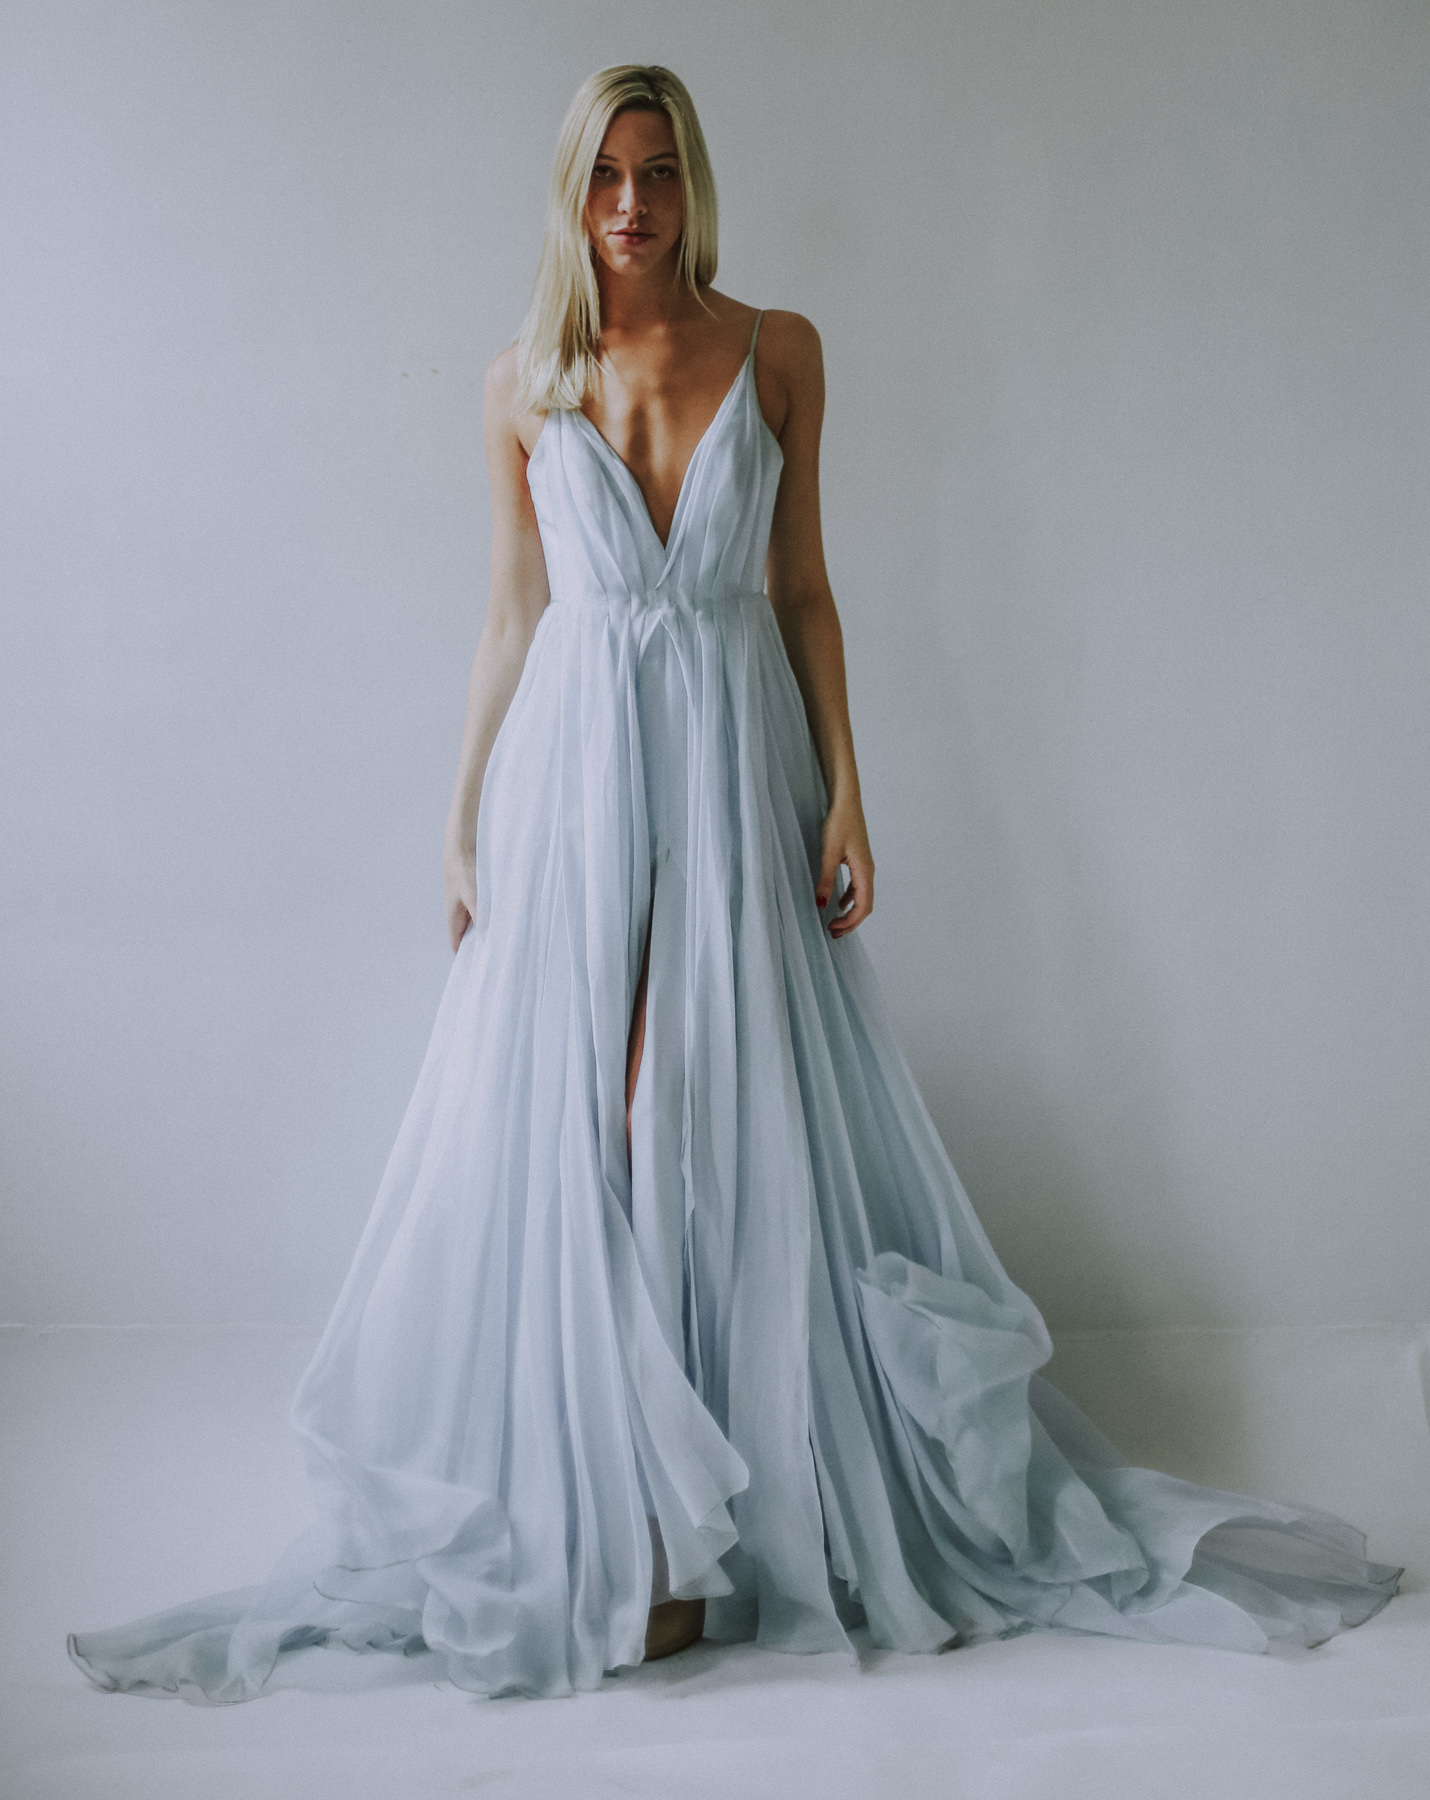 short blue wedding dress